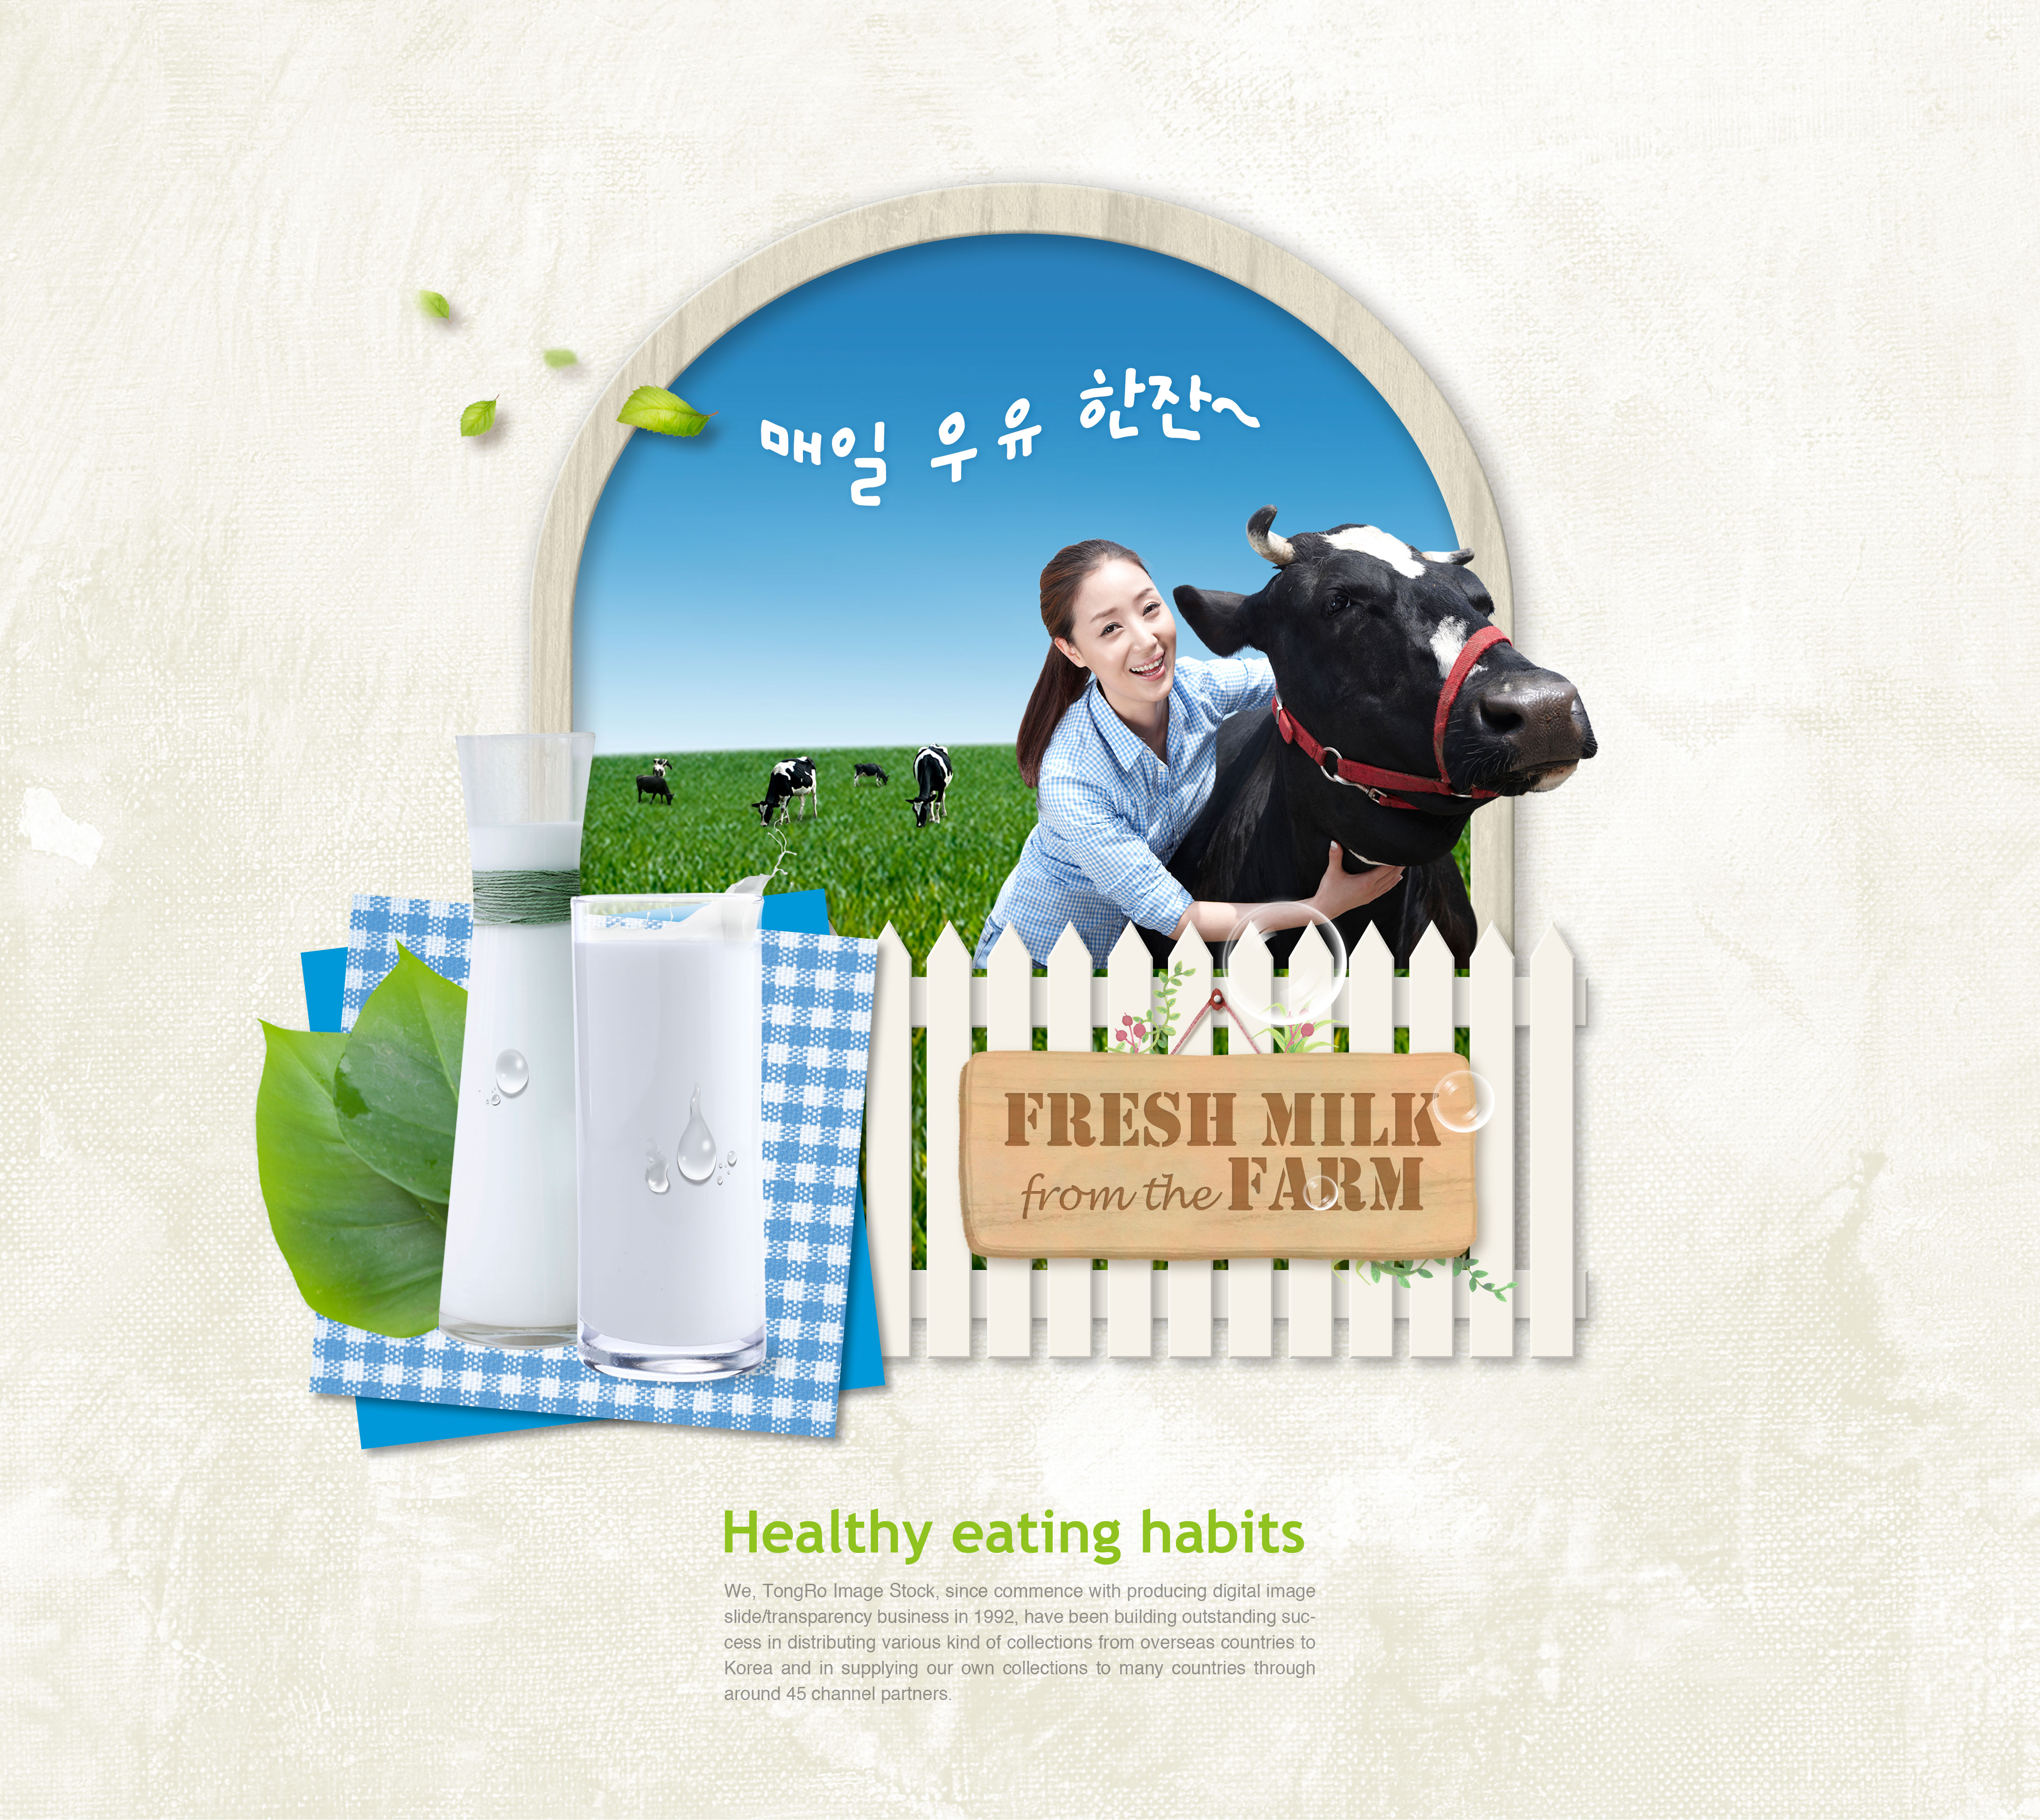 农场新鲜牛奶品牌推广广告海报模板插图